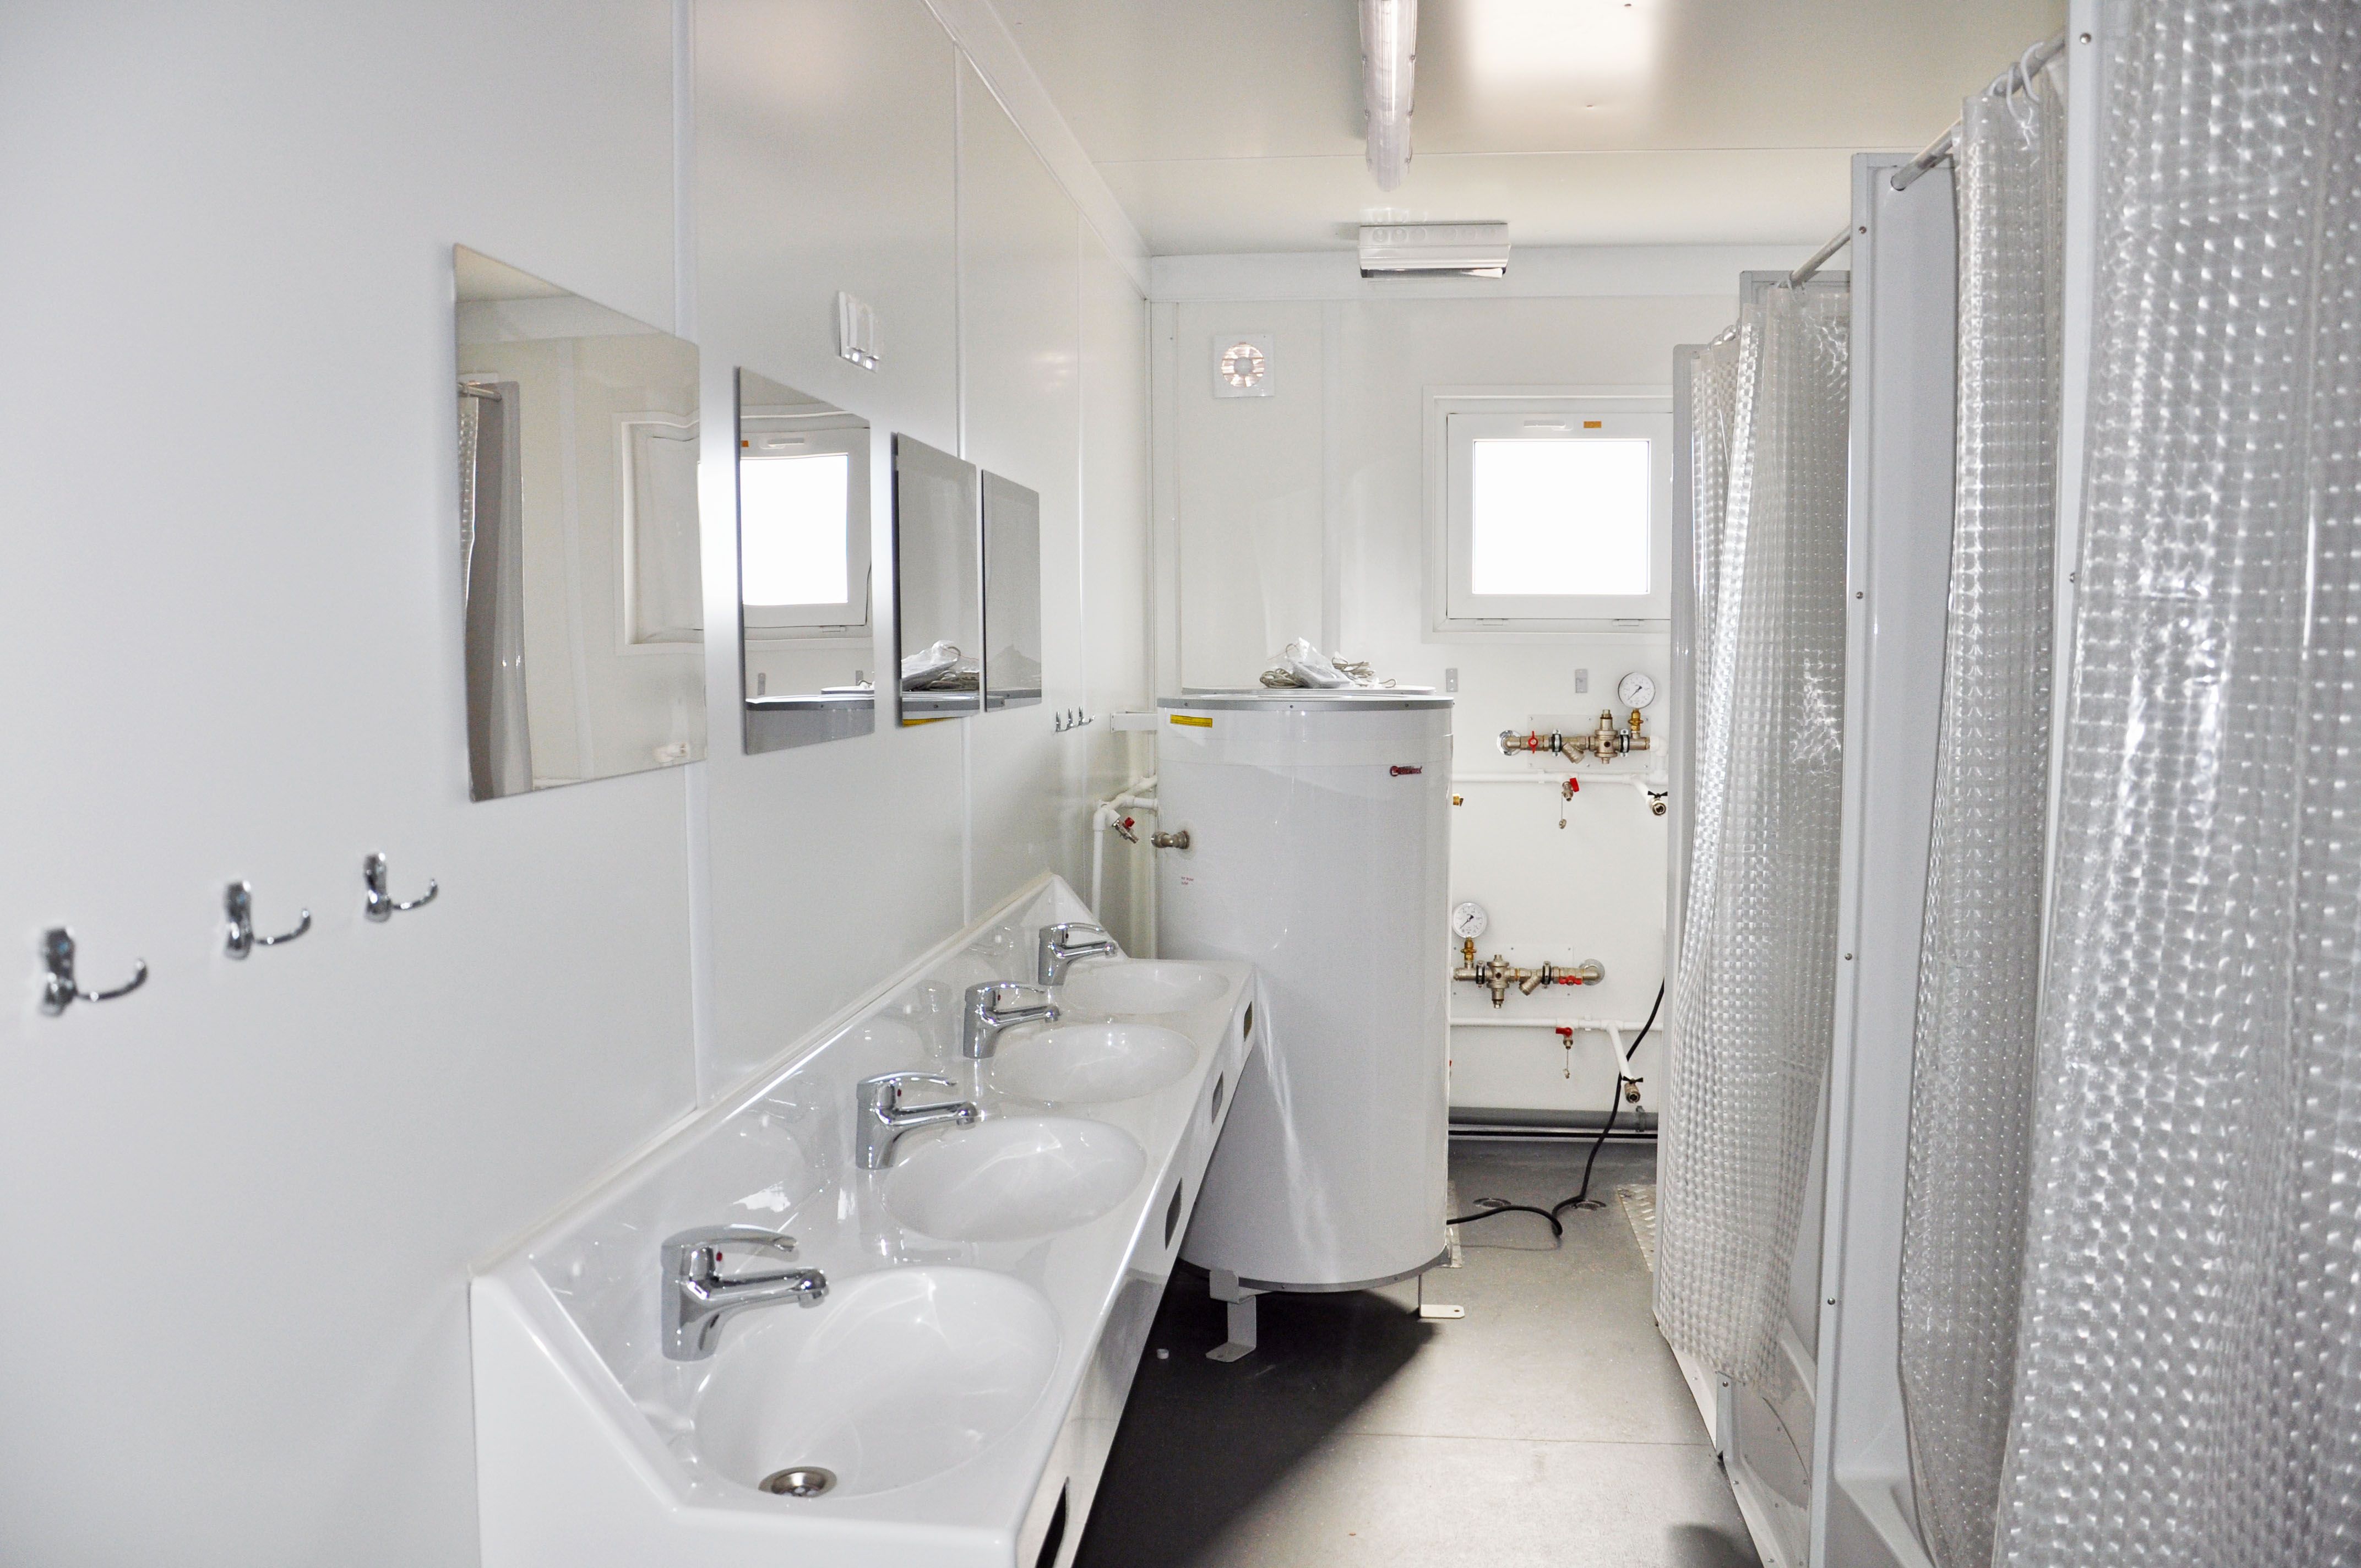 Sanitärcontainer mit Handwaschbecken und Duschkabinen